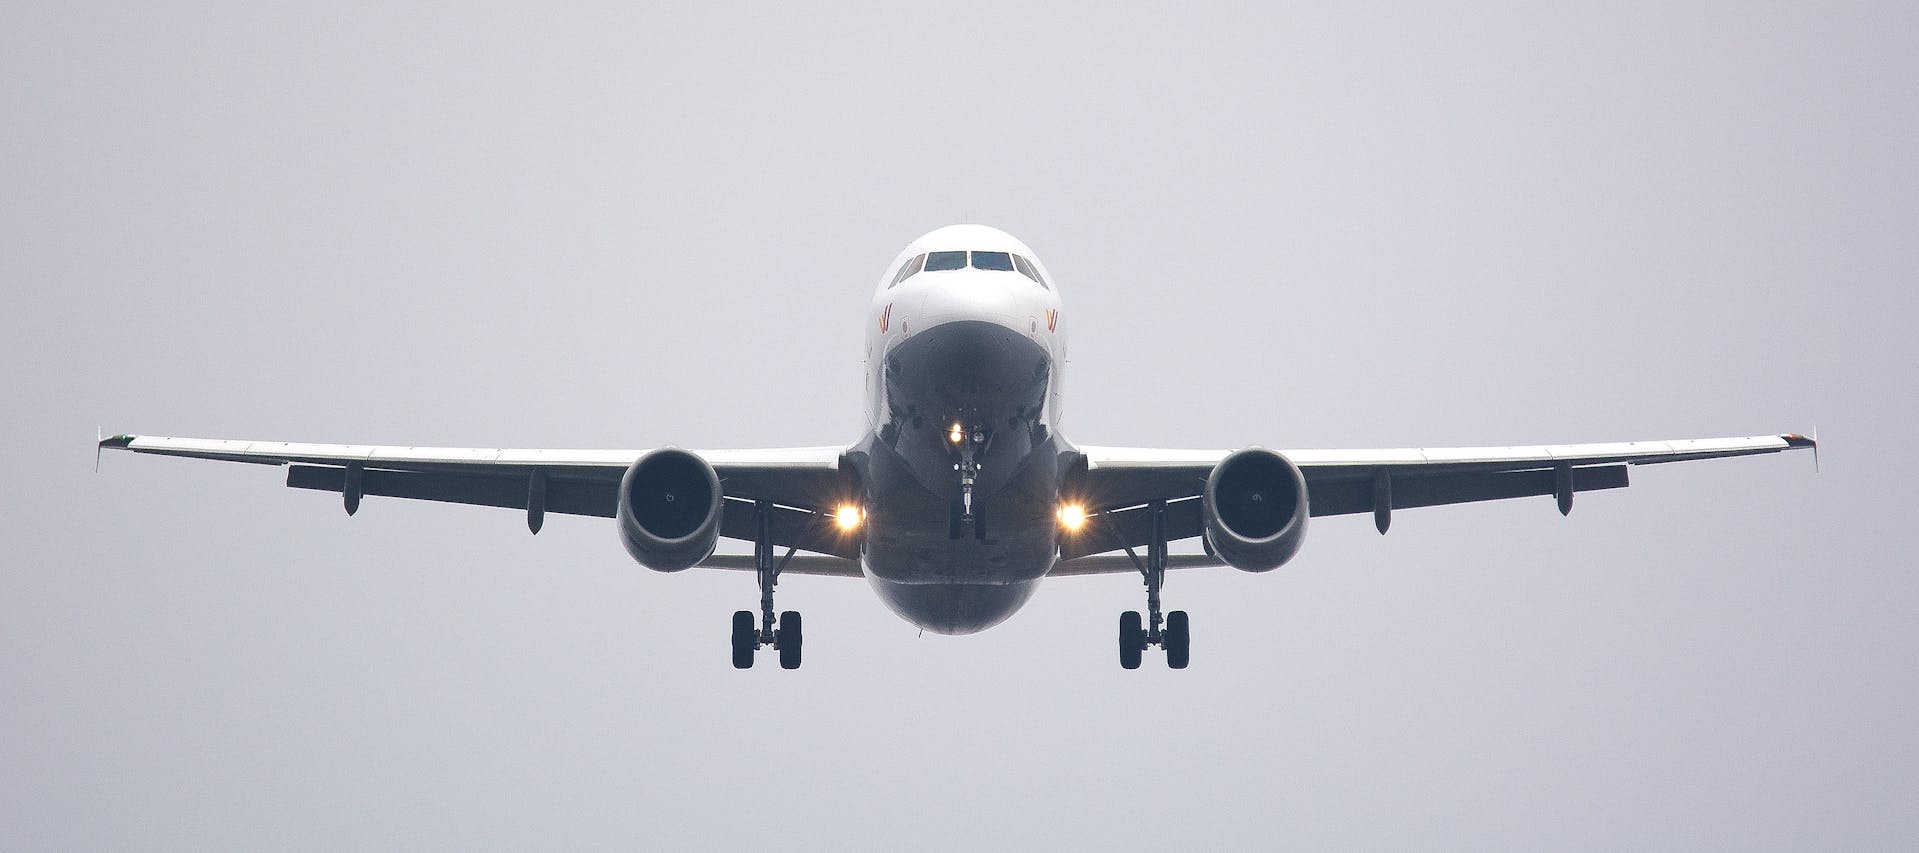 Un avion dans le ciel | Source : Pexels